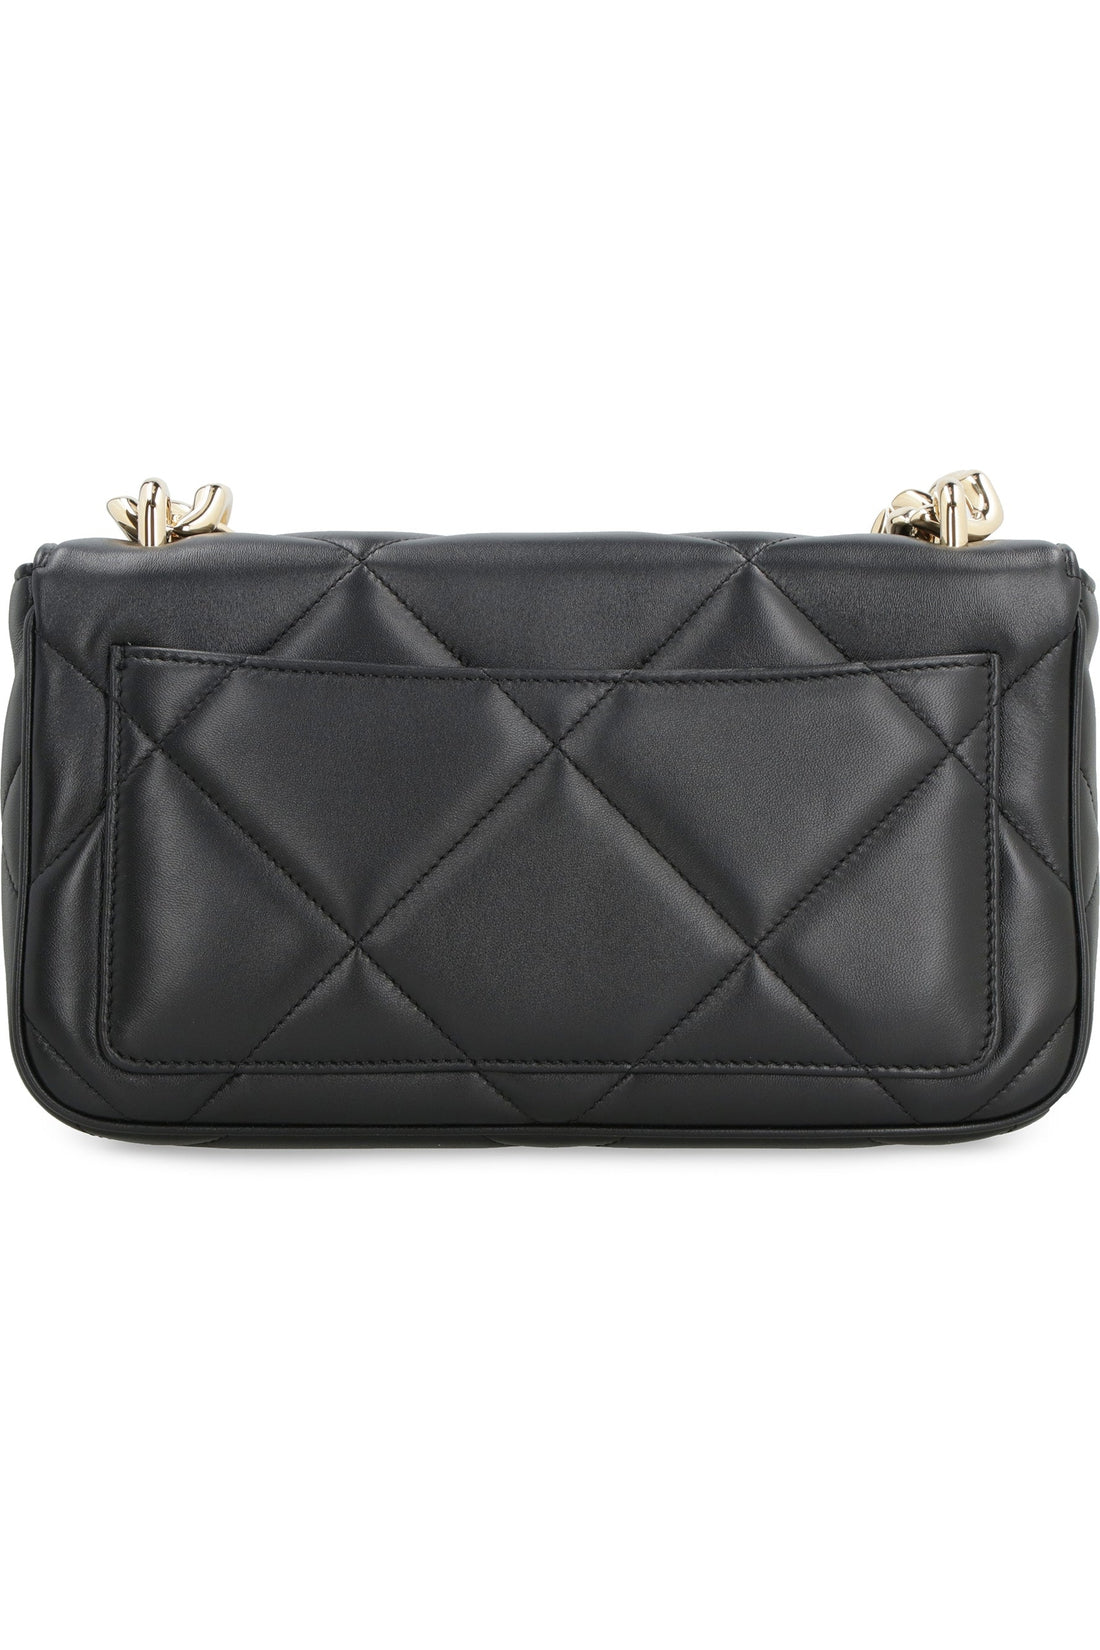 Dolce & Gabbana-OUTLET-SALE-3.5 leather shoulder bag-ARCHIVIST